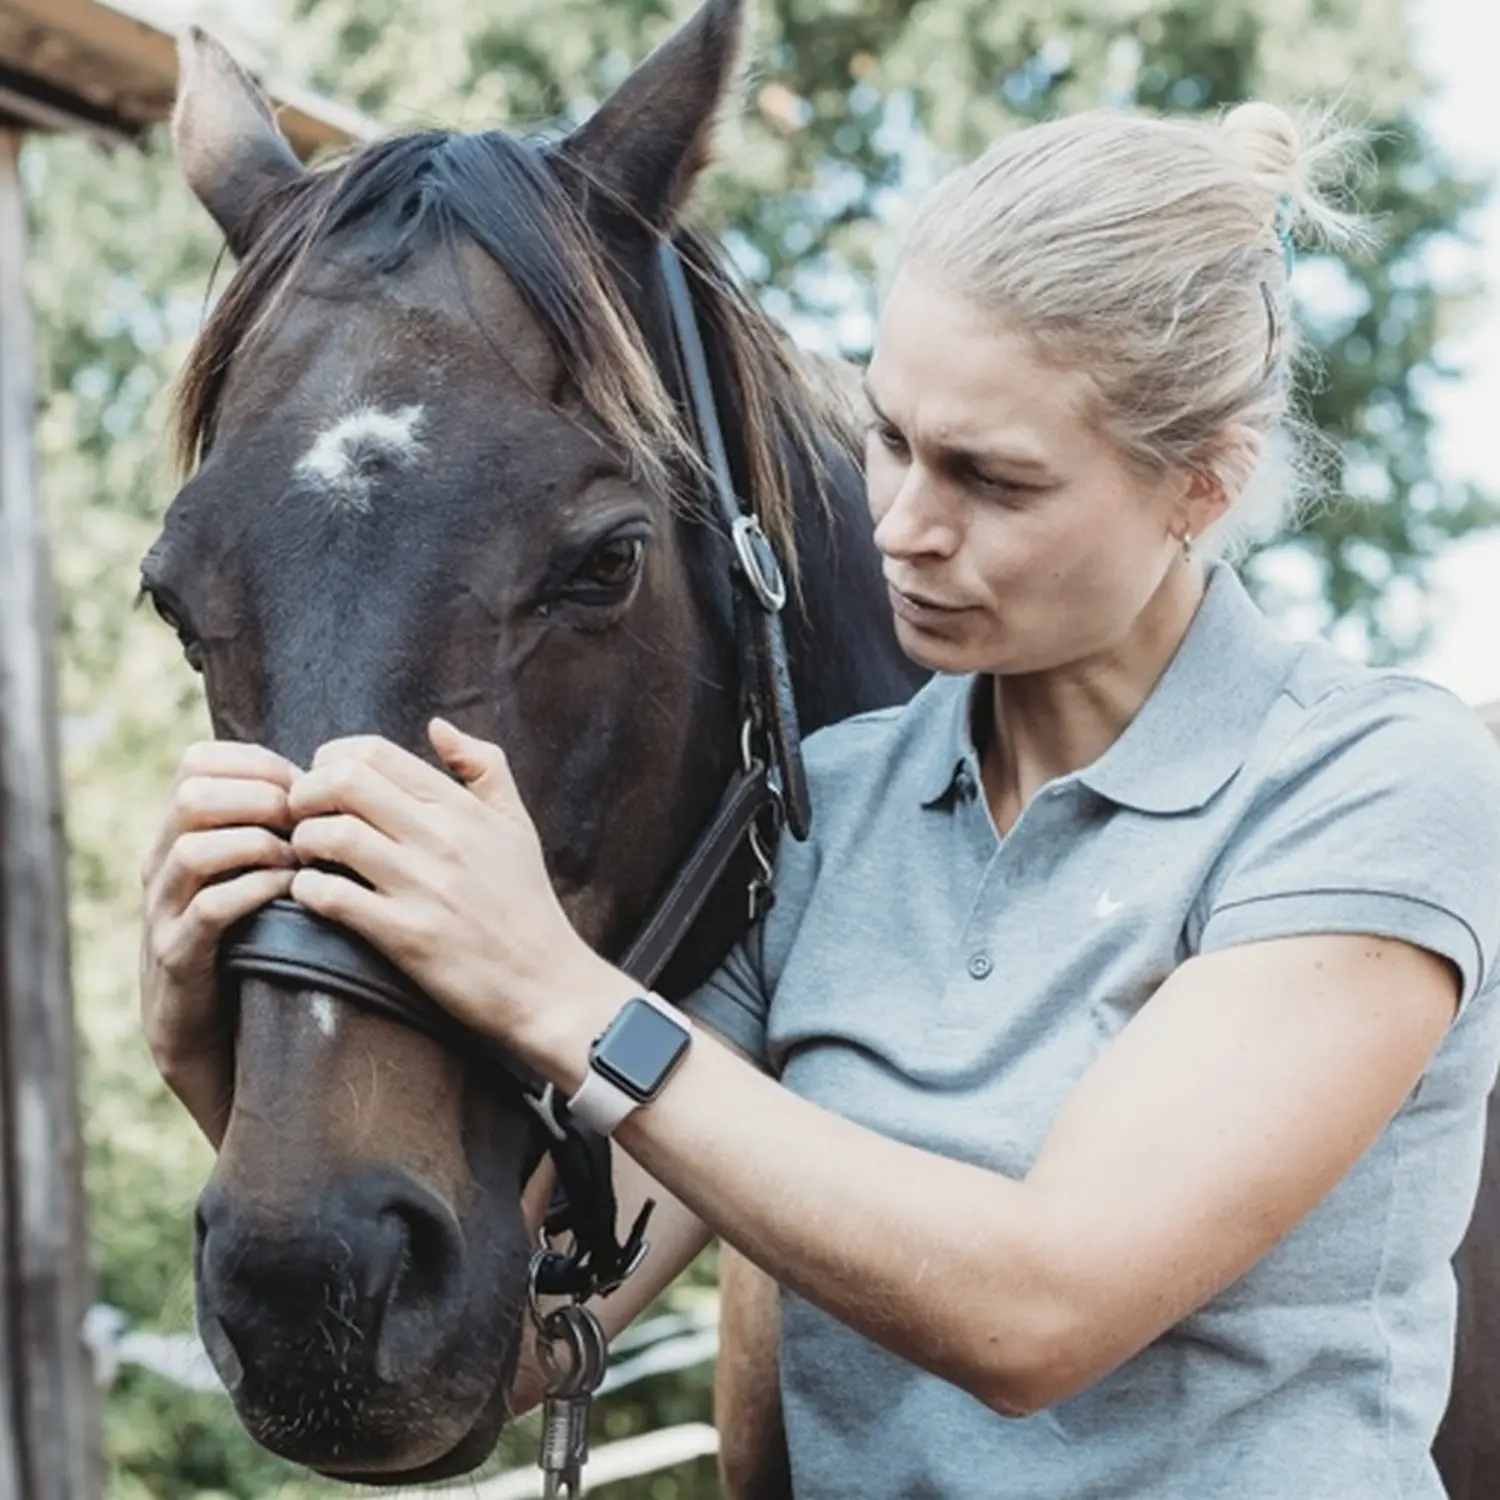 Kira Kappel küsst Pferd von Visionäre Pferdeosteopathie